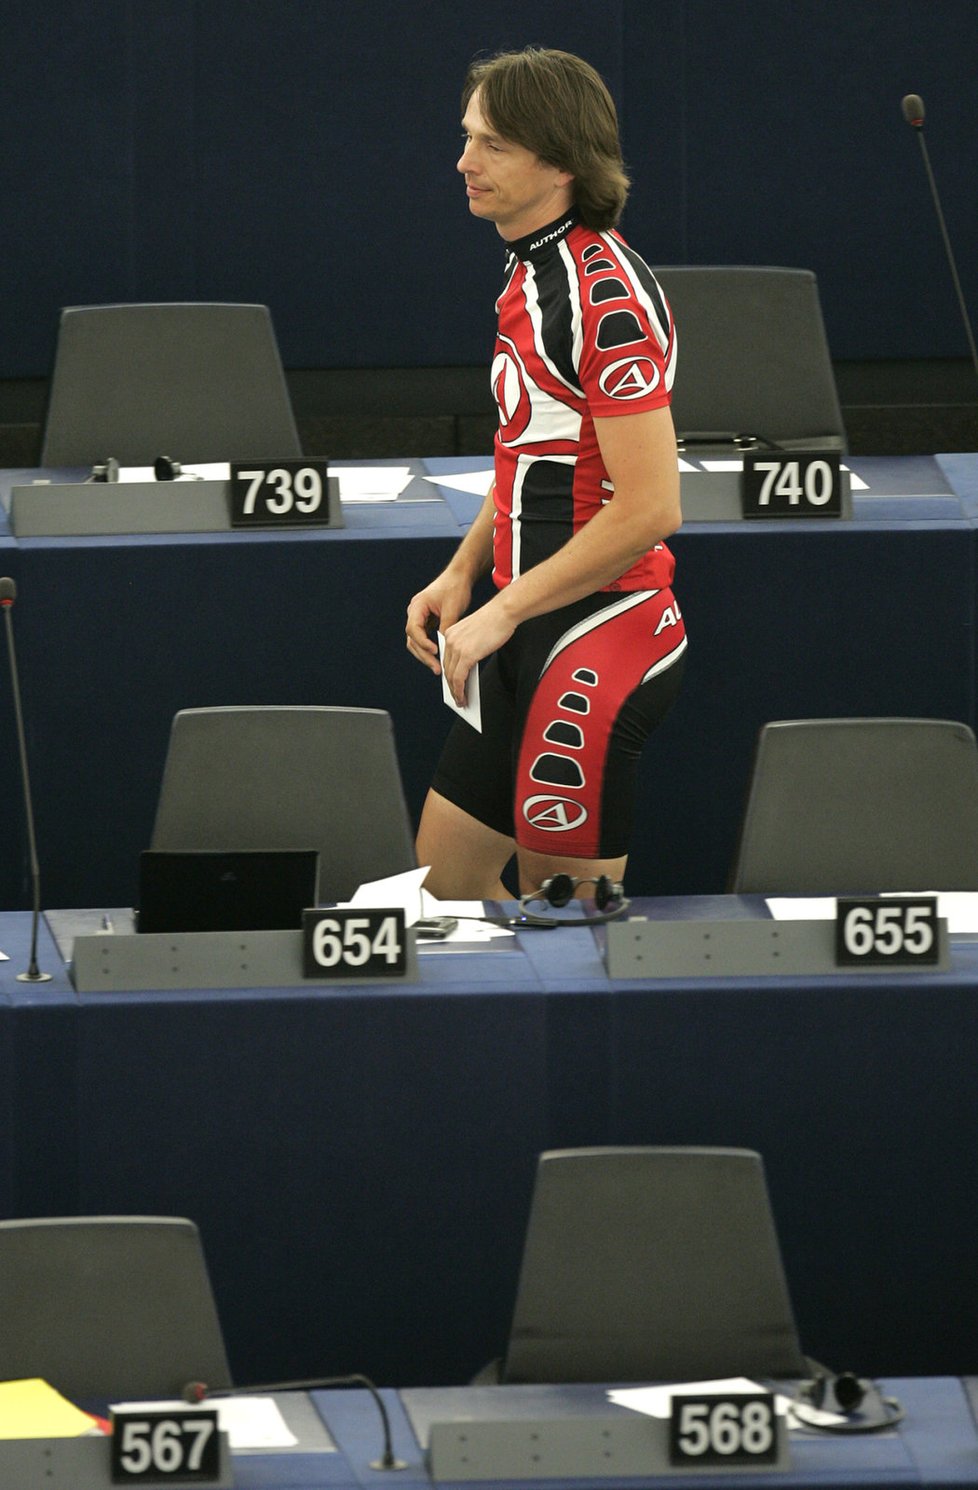 Na první zasedání europarlamentu v roce 2009 vyrazil Kožušník z Prahy na kole. V roce 2019 se chce do Bruselu vrátit, kandidovat bude za ODS.